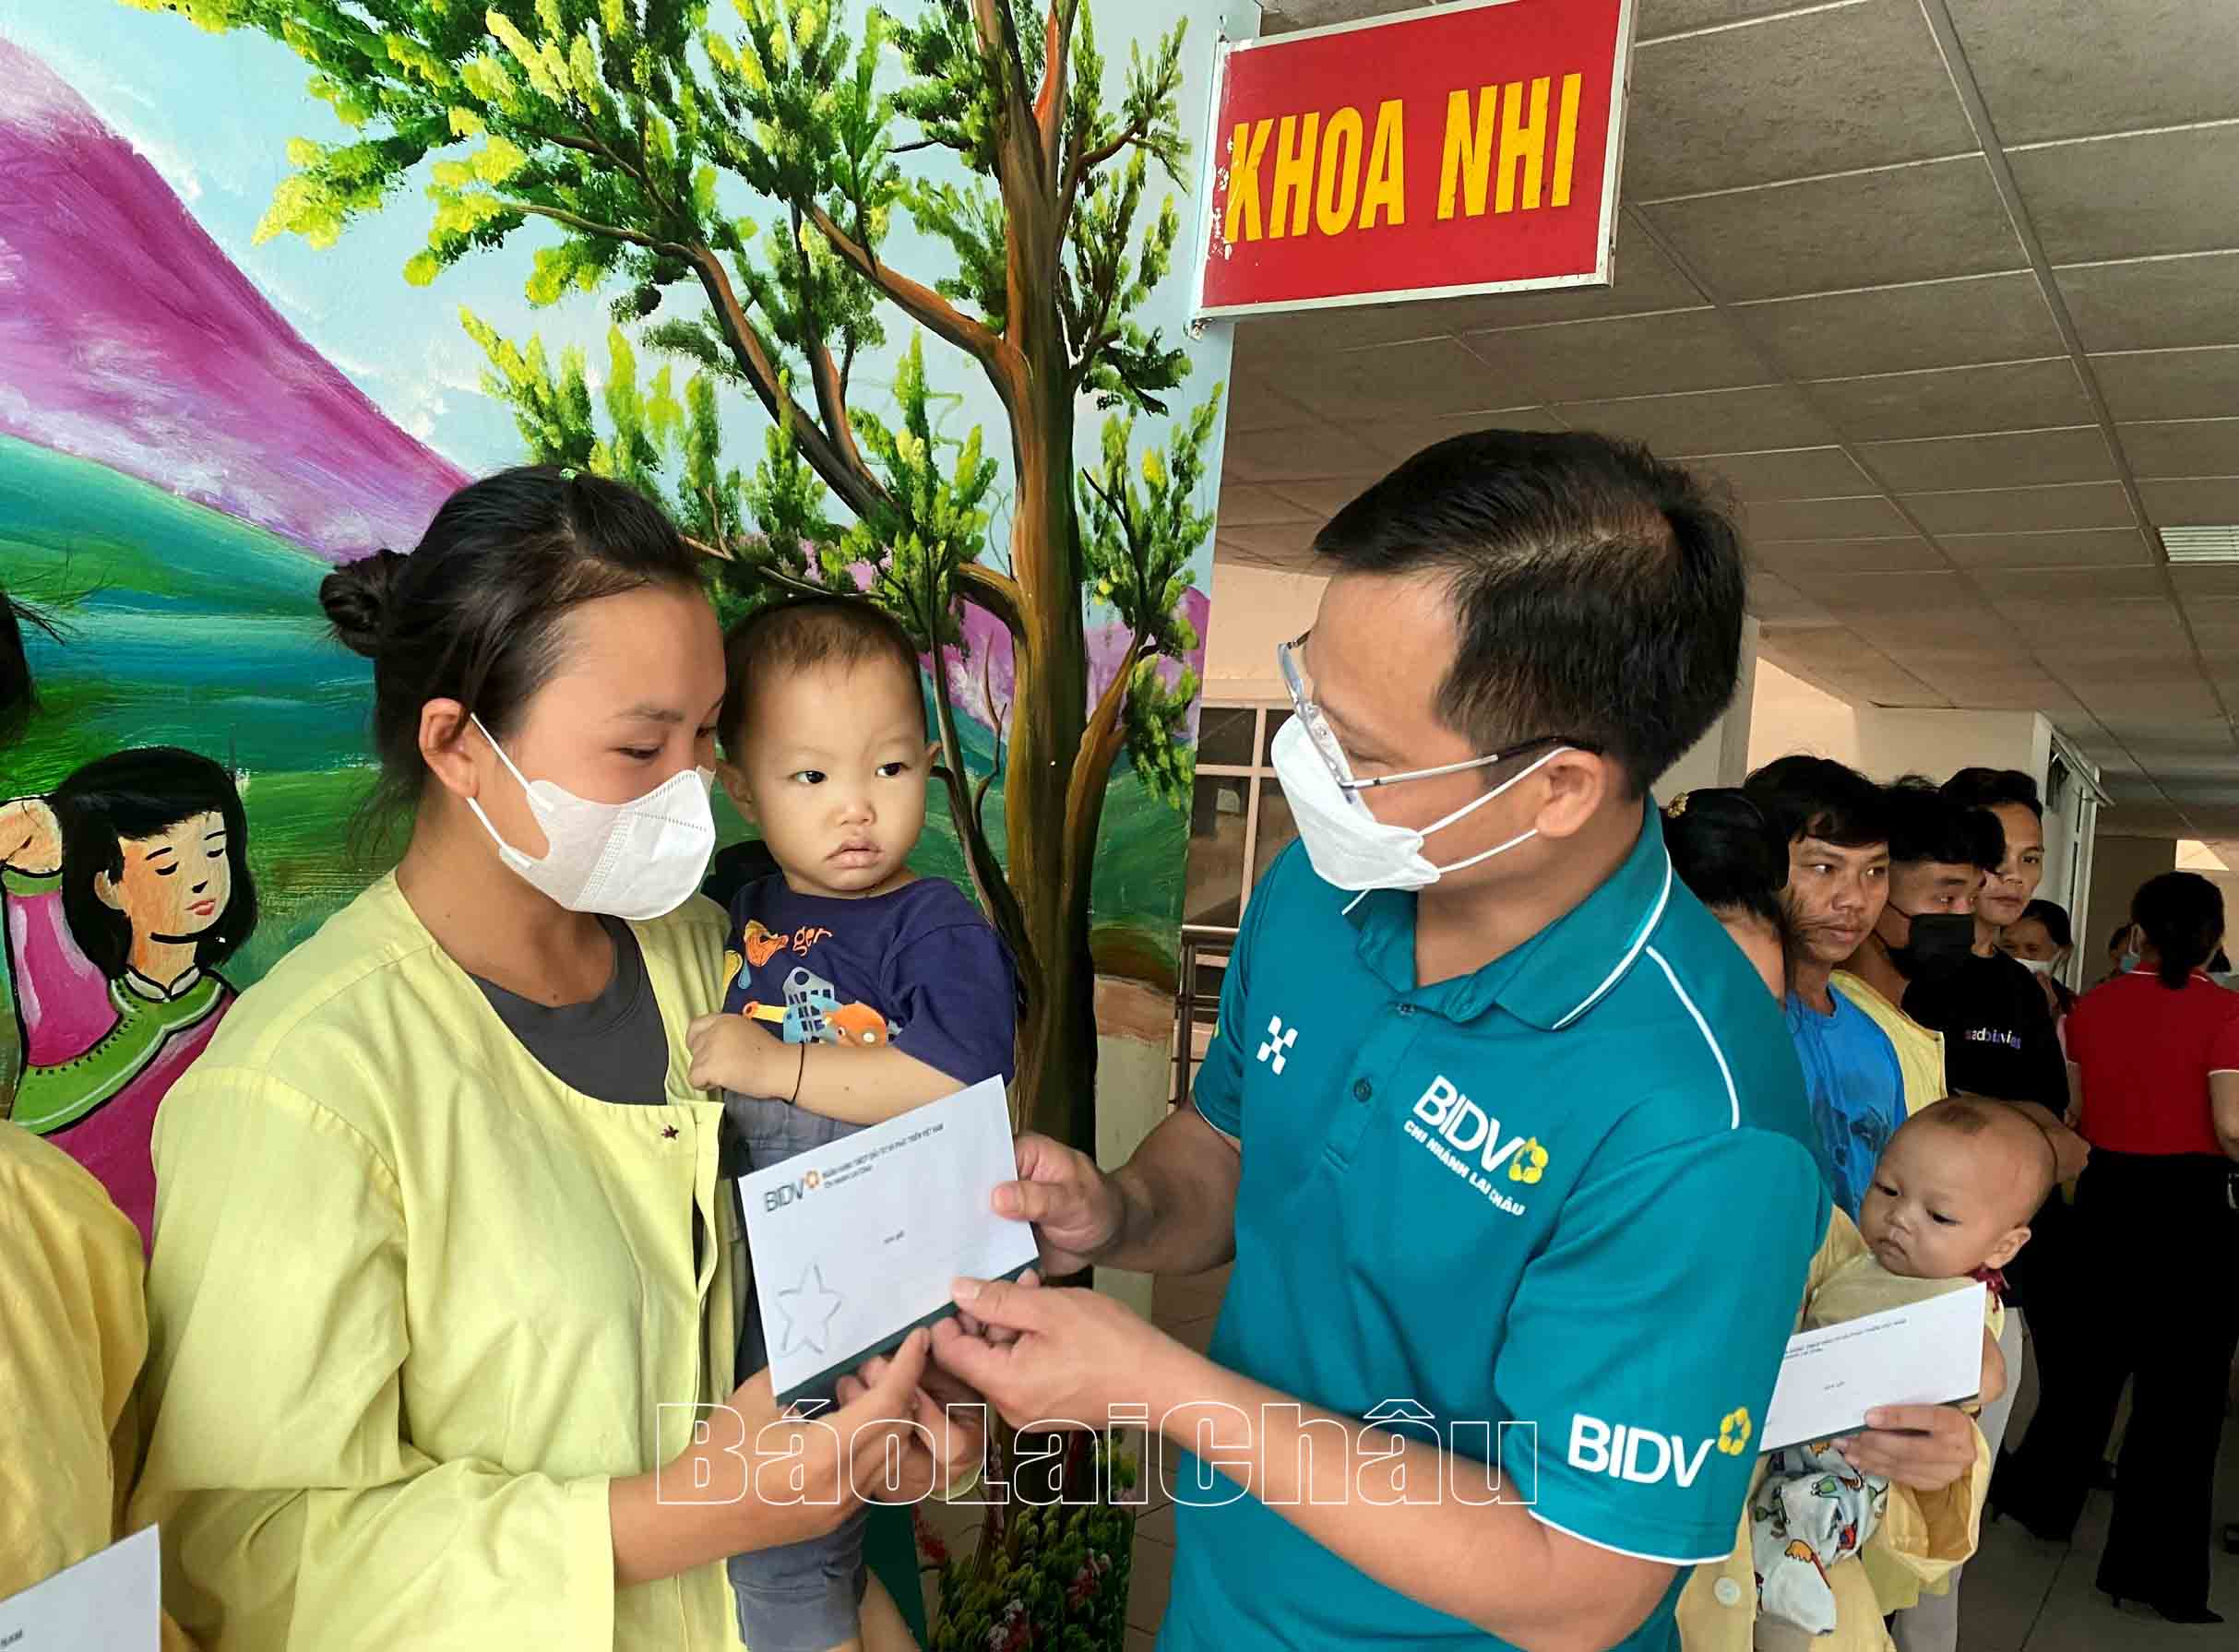 Los líderes de BIDV Lai Chau entregaron obsequios a niños en circunstancias difíciles que estaban siendo atendidos en el Hospital General Provincial.